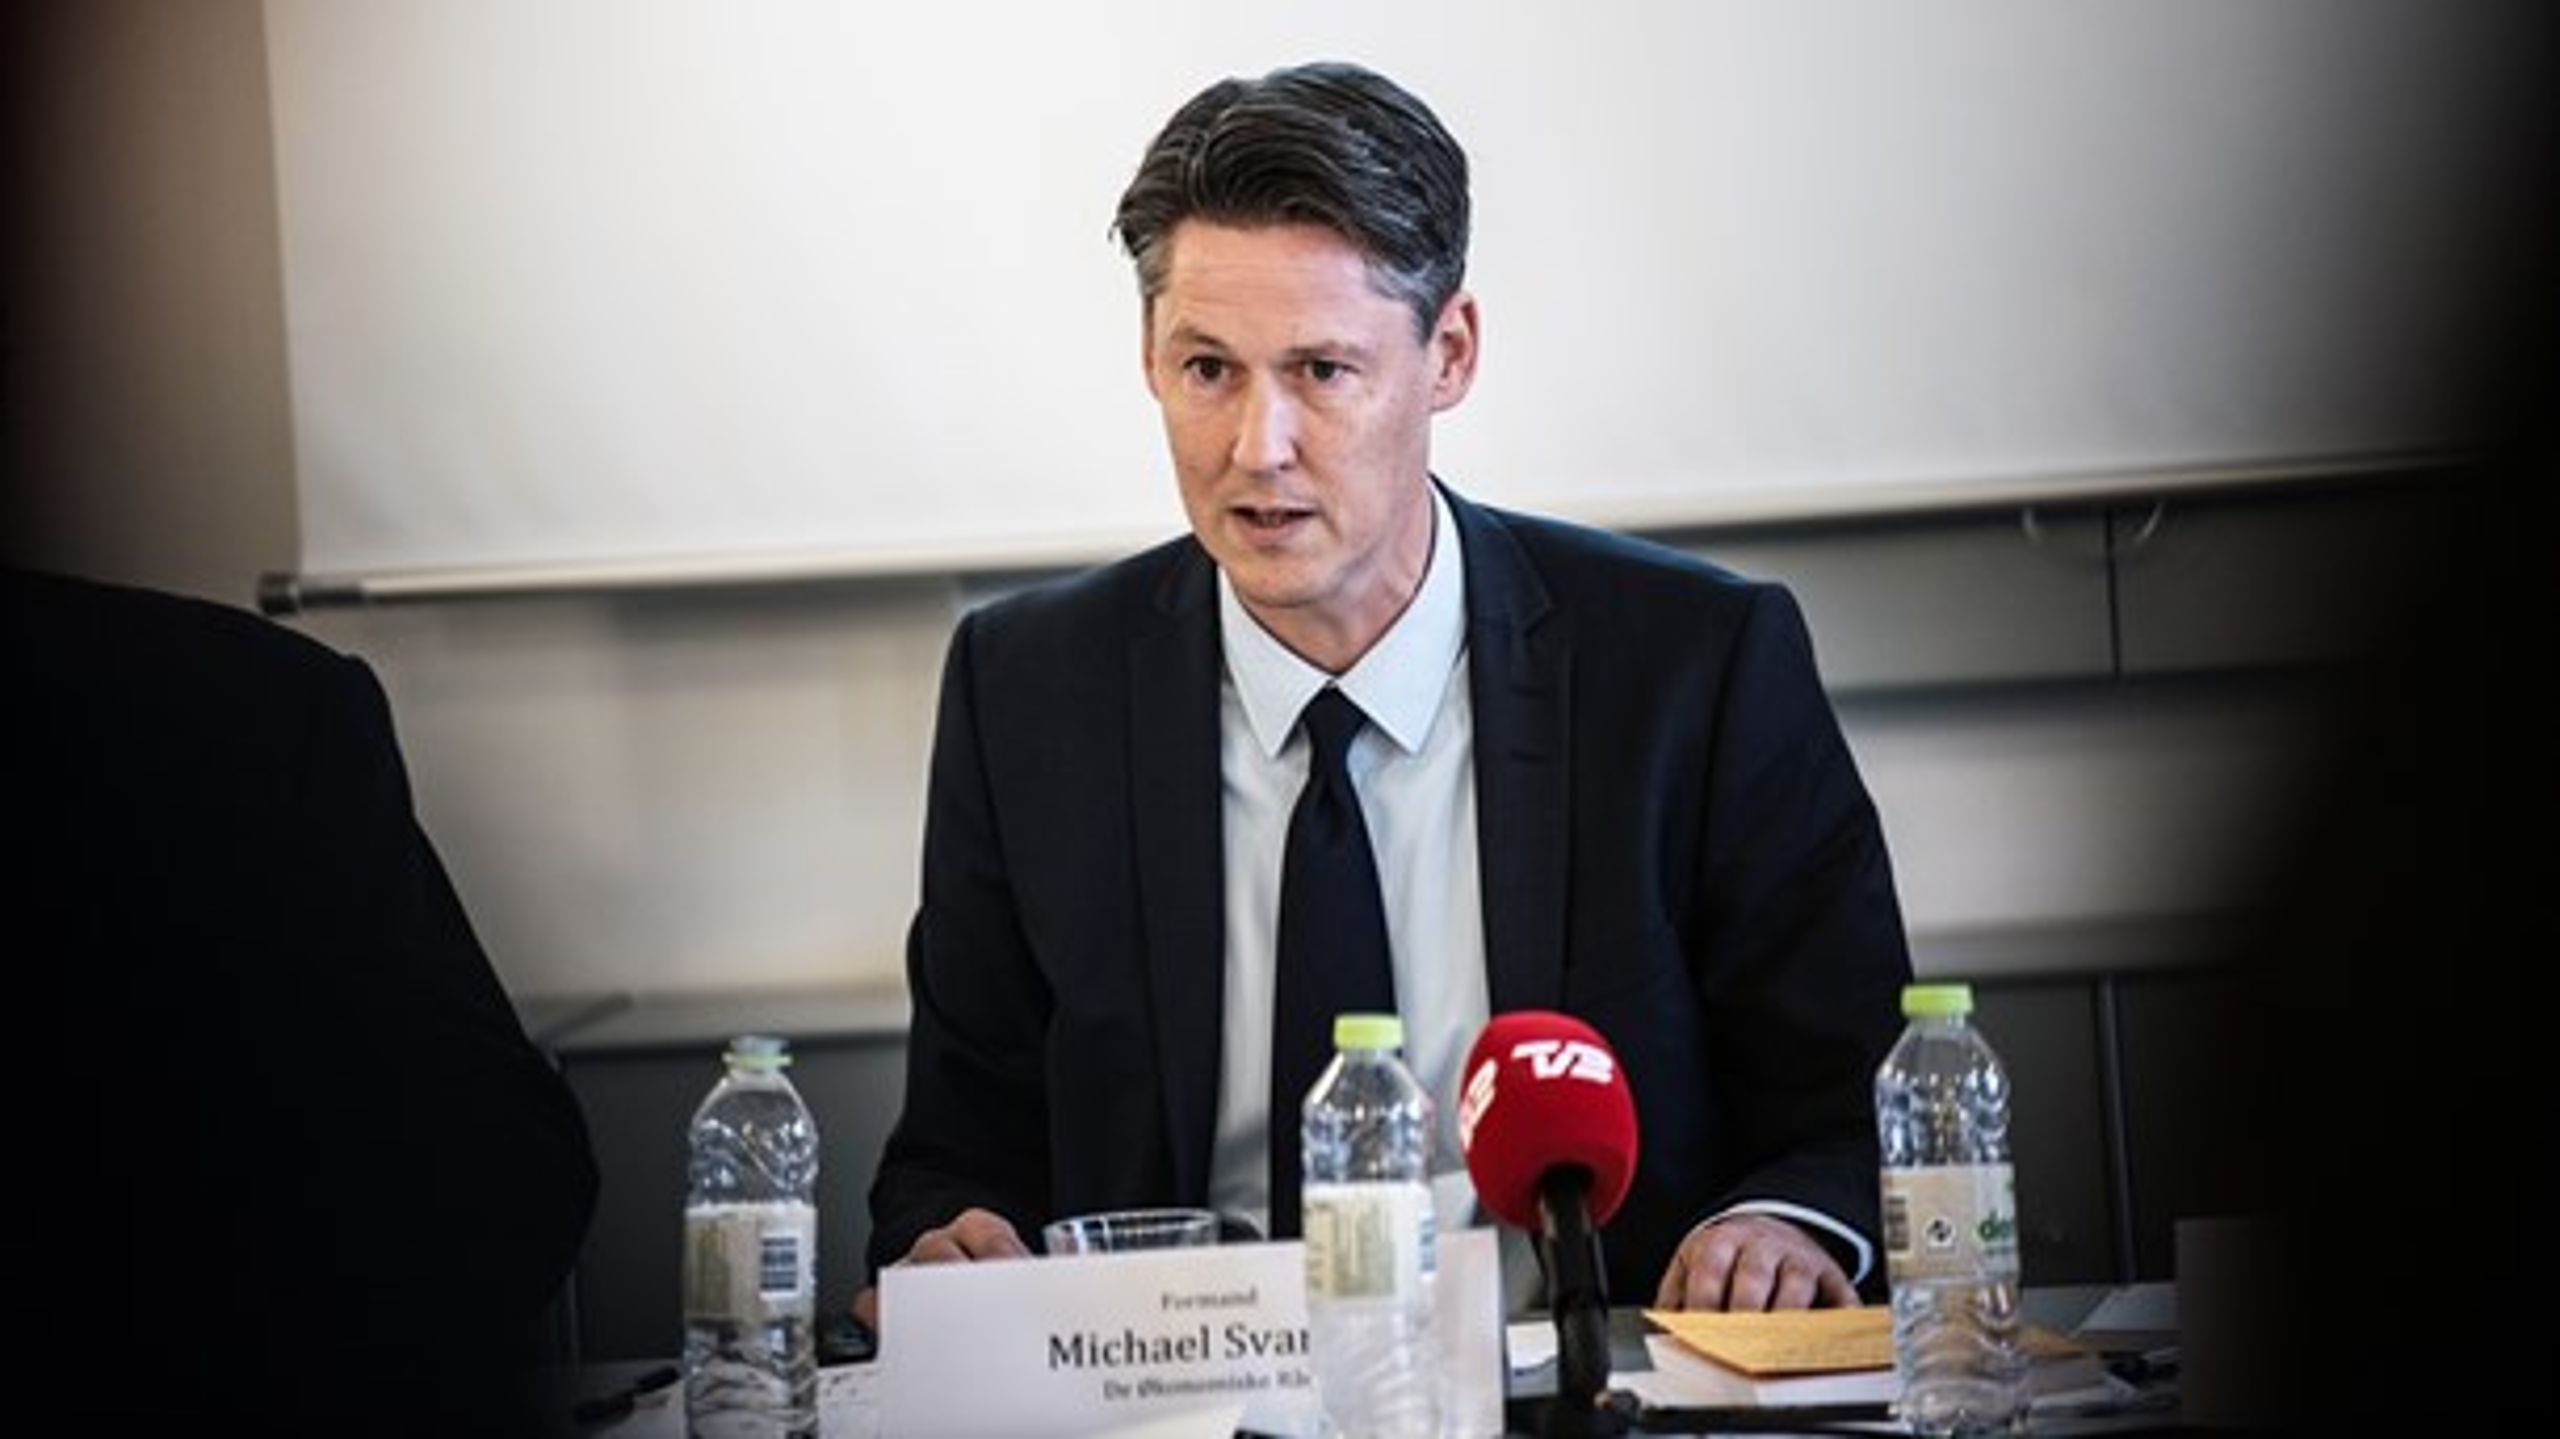 Overvismand Michael Svarer præsenterer i dag Det Økonomiske Råds halvårlige rapport om dansk økonomi.&nbsp;